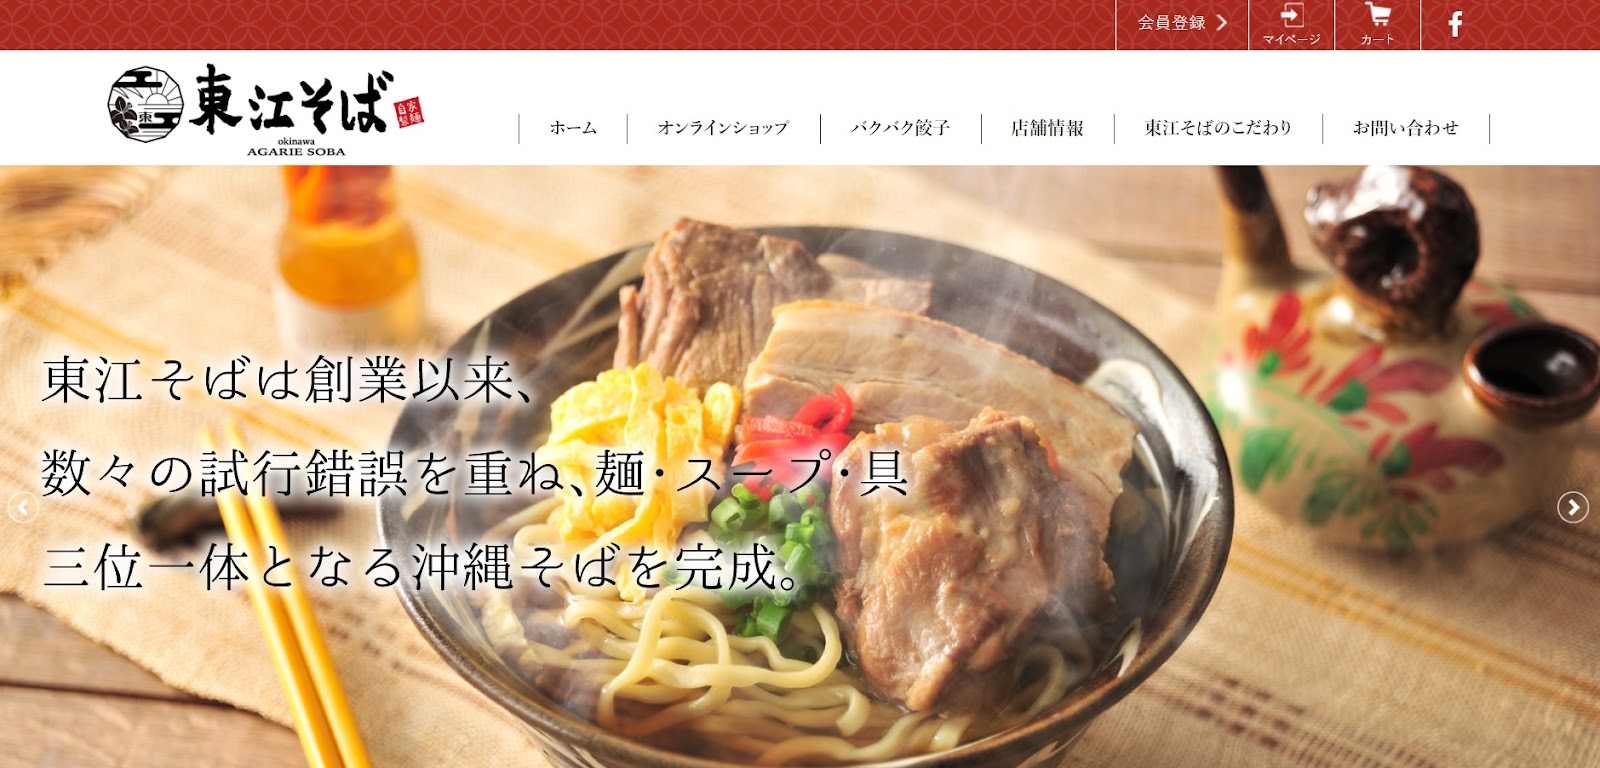 自家製生麺が魅力の沖縄そば「東江そば お取り寄せ通販サイト」